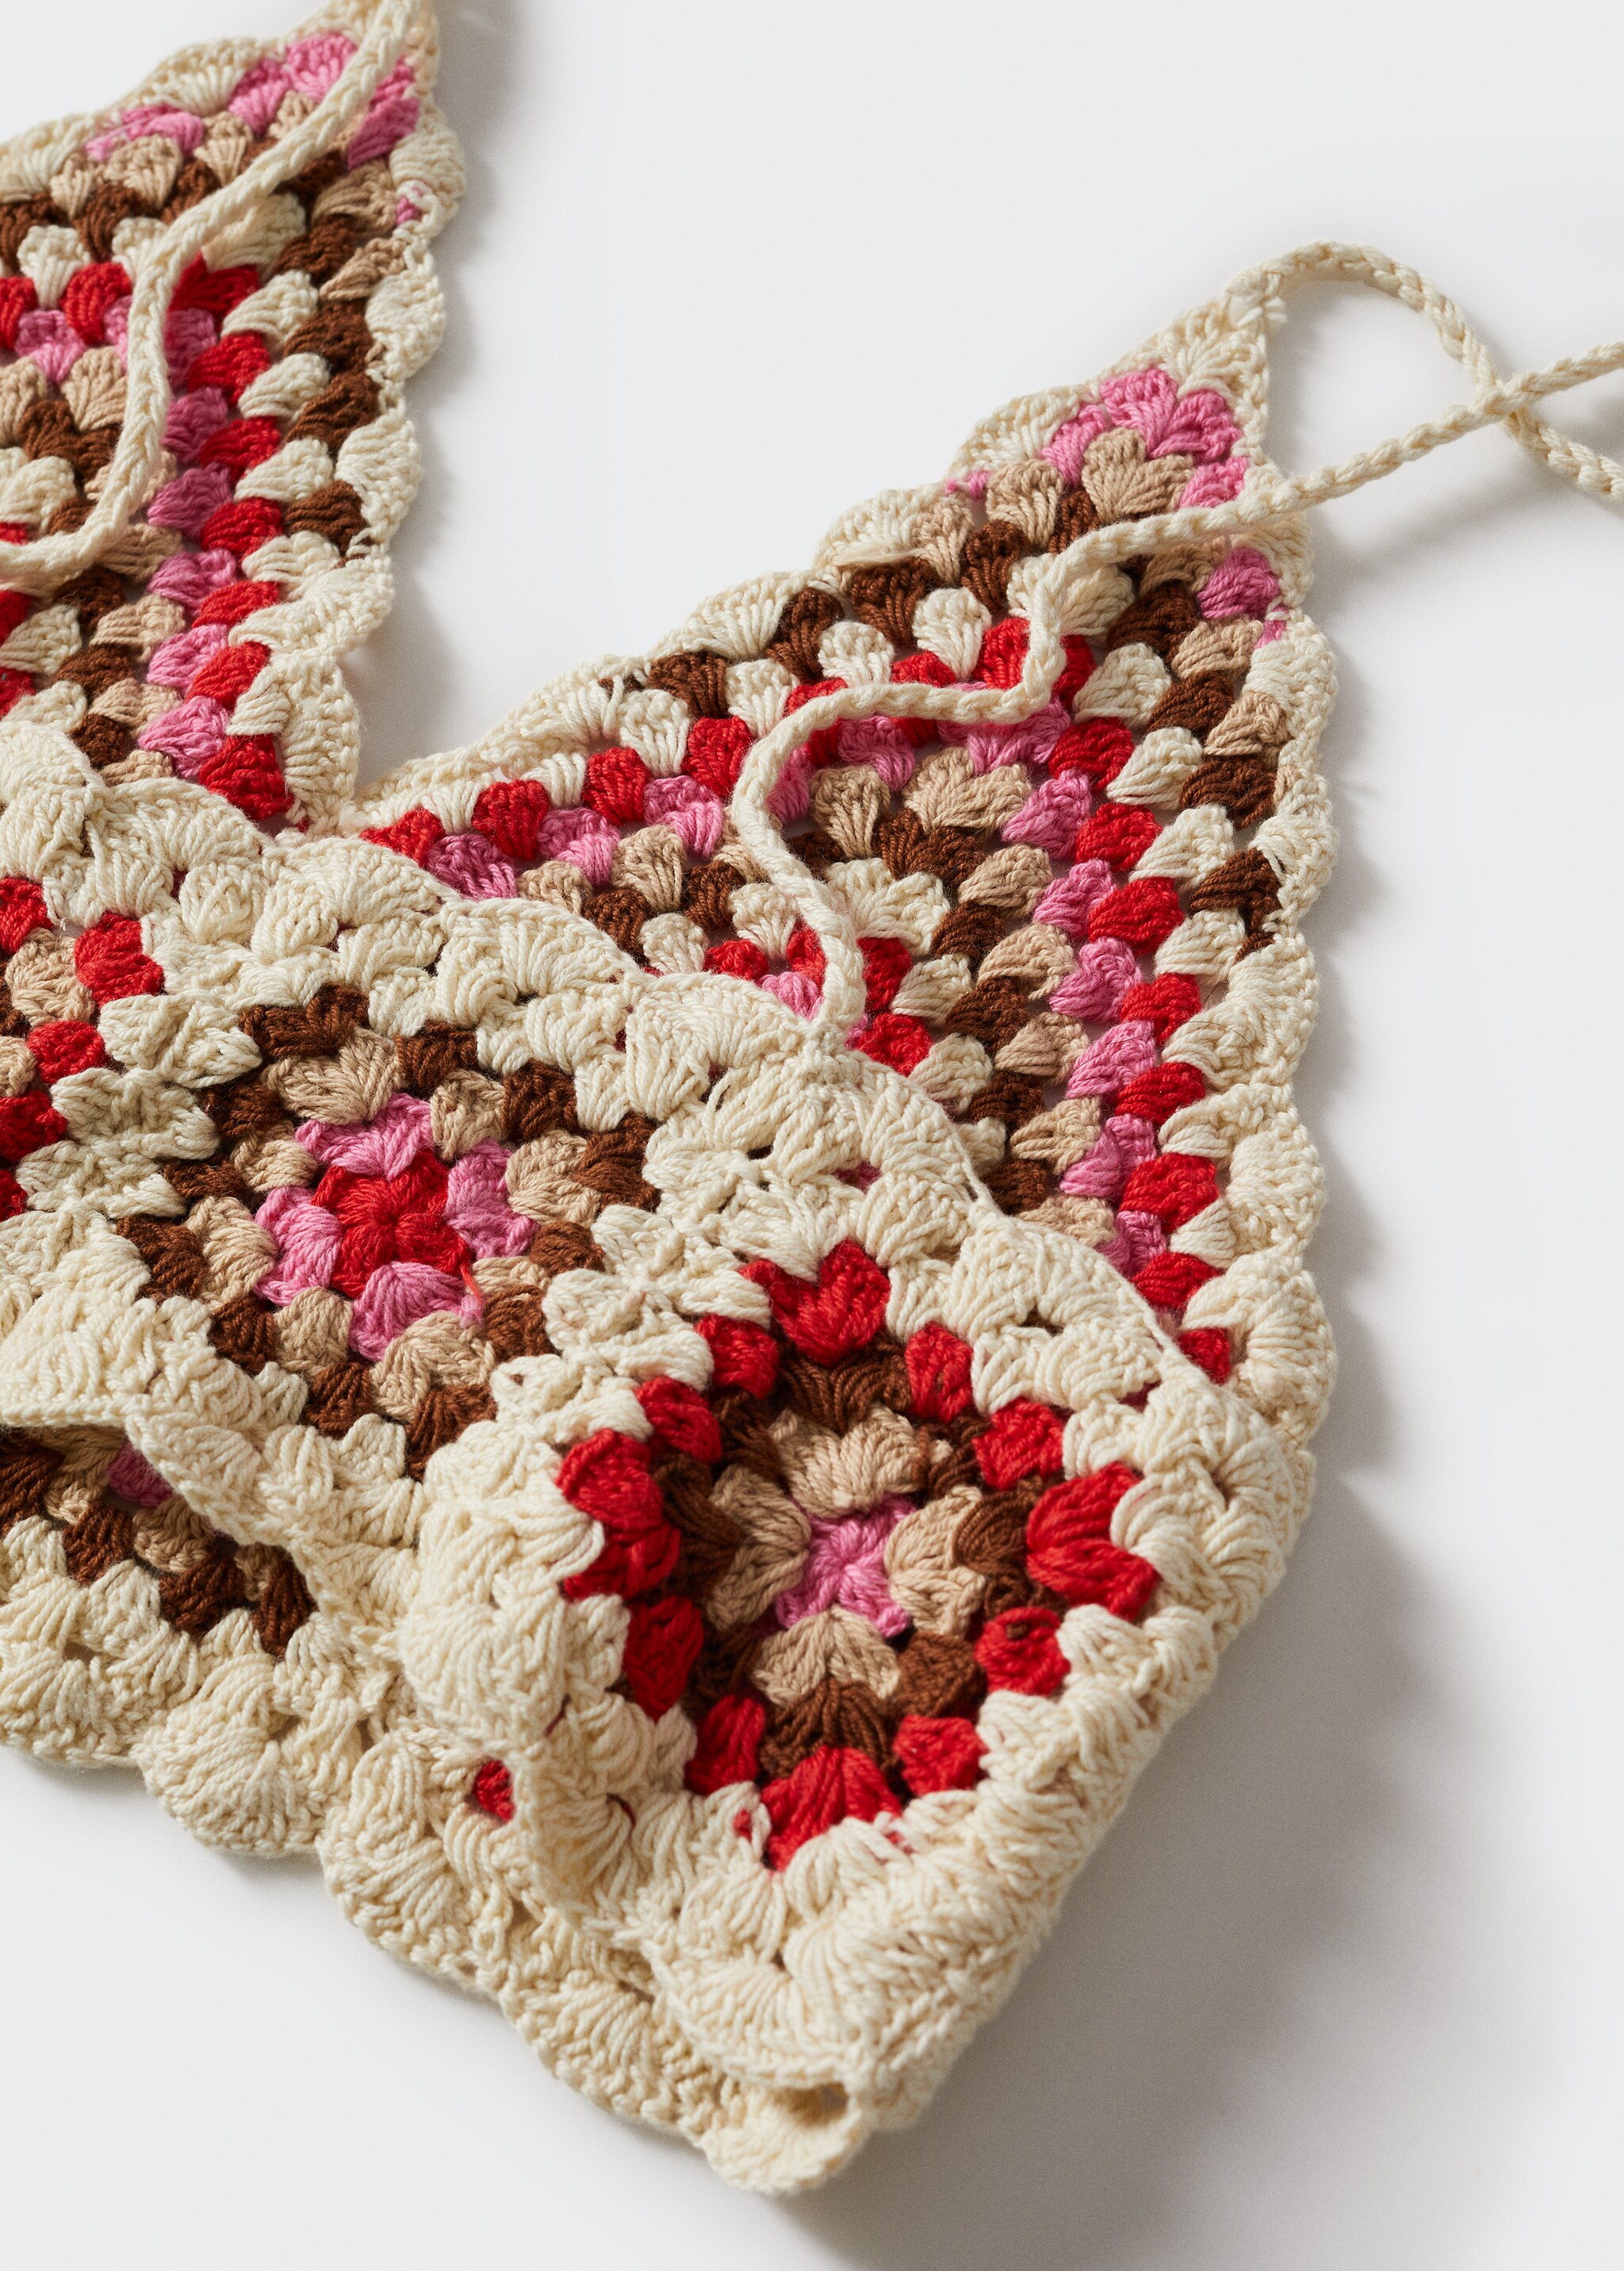 Crochet crop top - Details of the article 8